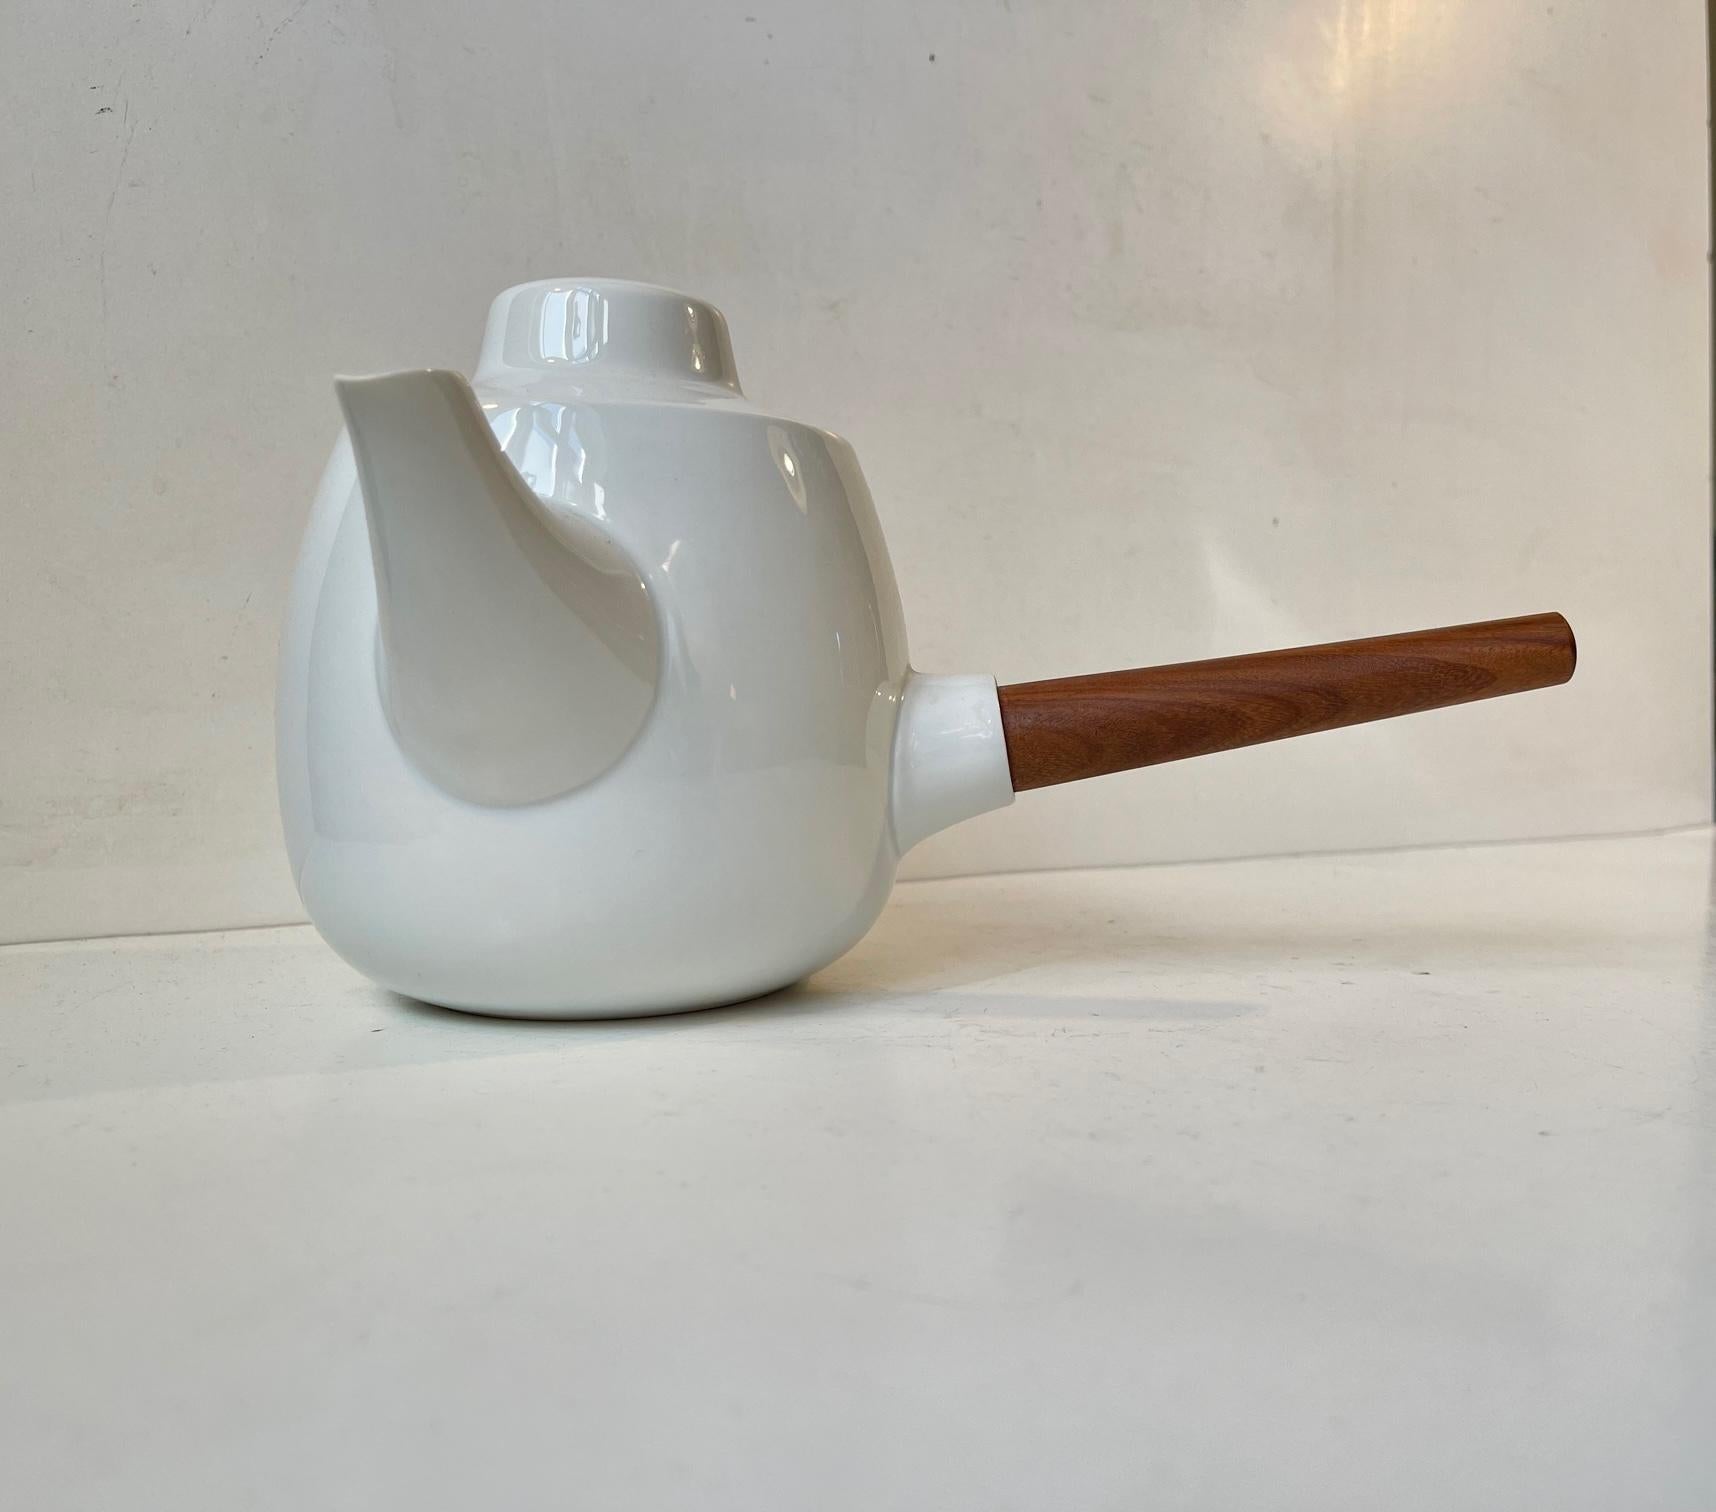 Wichtiger Entwurf von Henning Koppel, ausgestellt im British Museum und im Museum of Modern Art in New York. Dieses Set besteht aus einem Milch-/Zuckerkännchen/einer Schüssel und der Koppel Characteristic Teekanne mit ihrem konischen Henkel aus